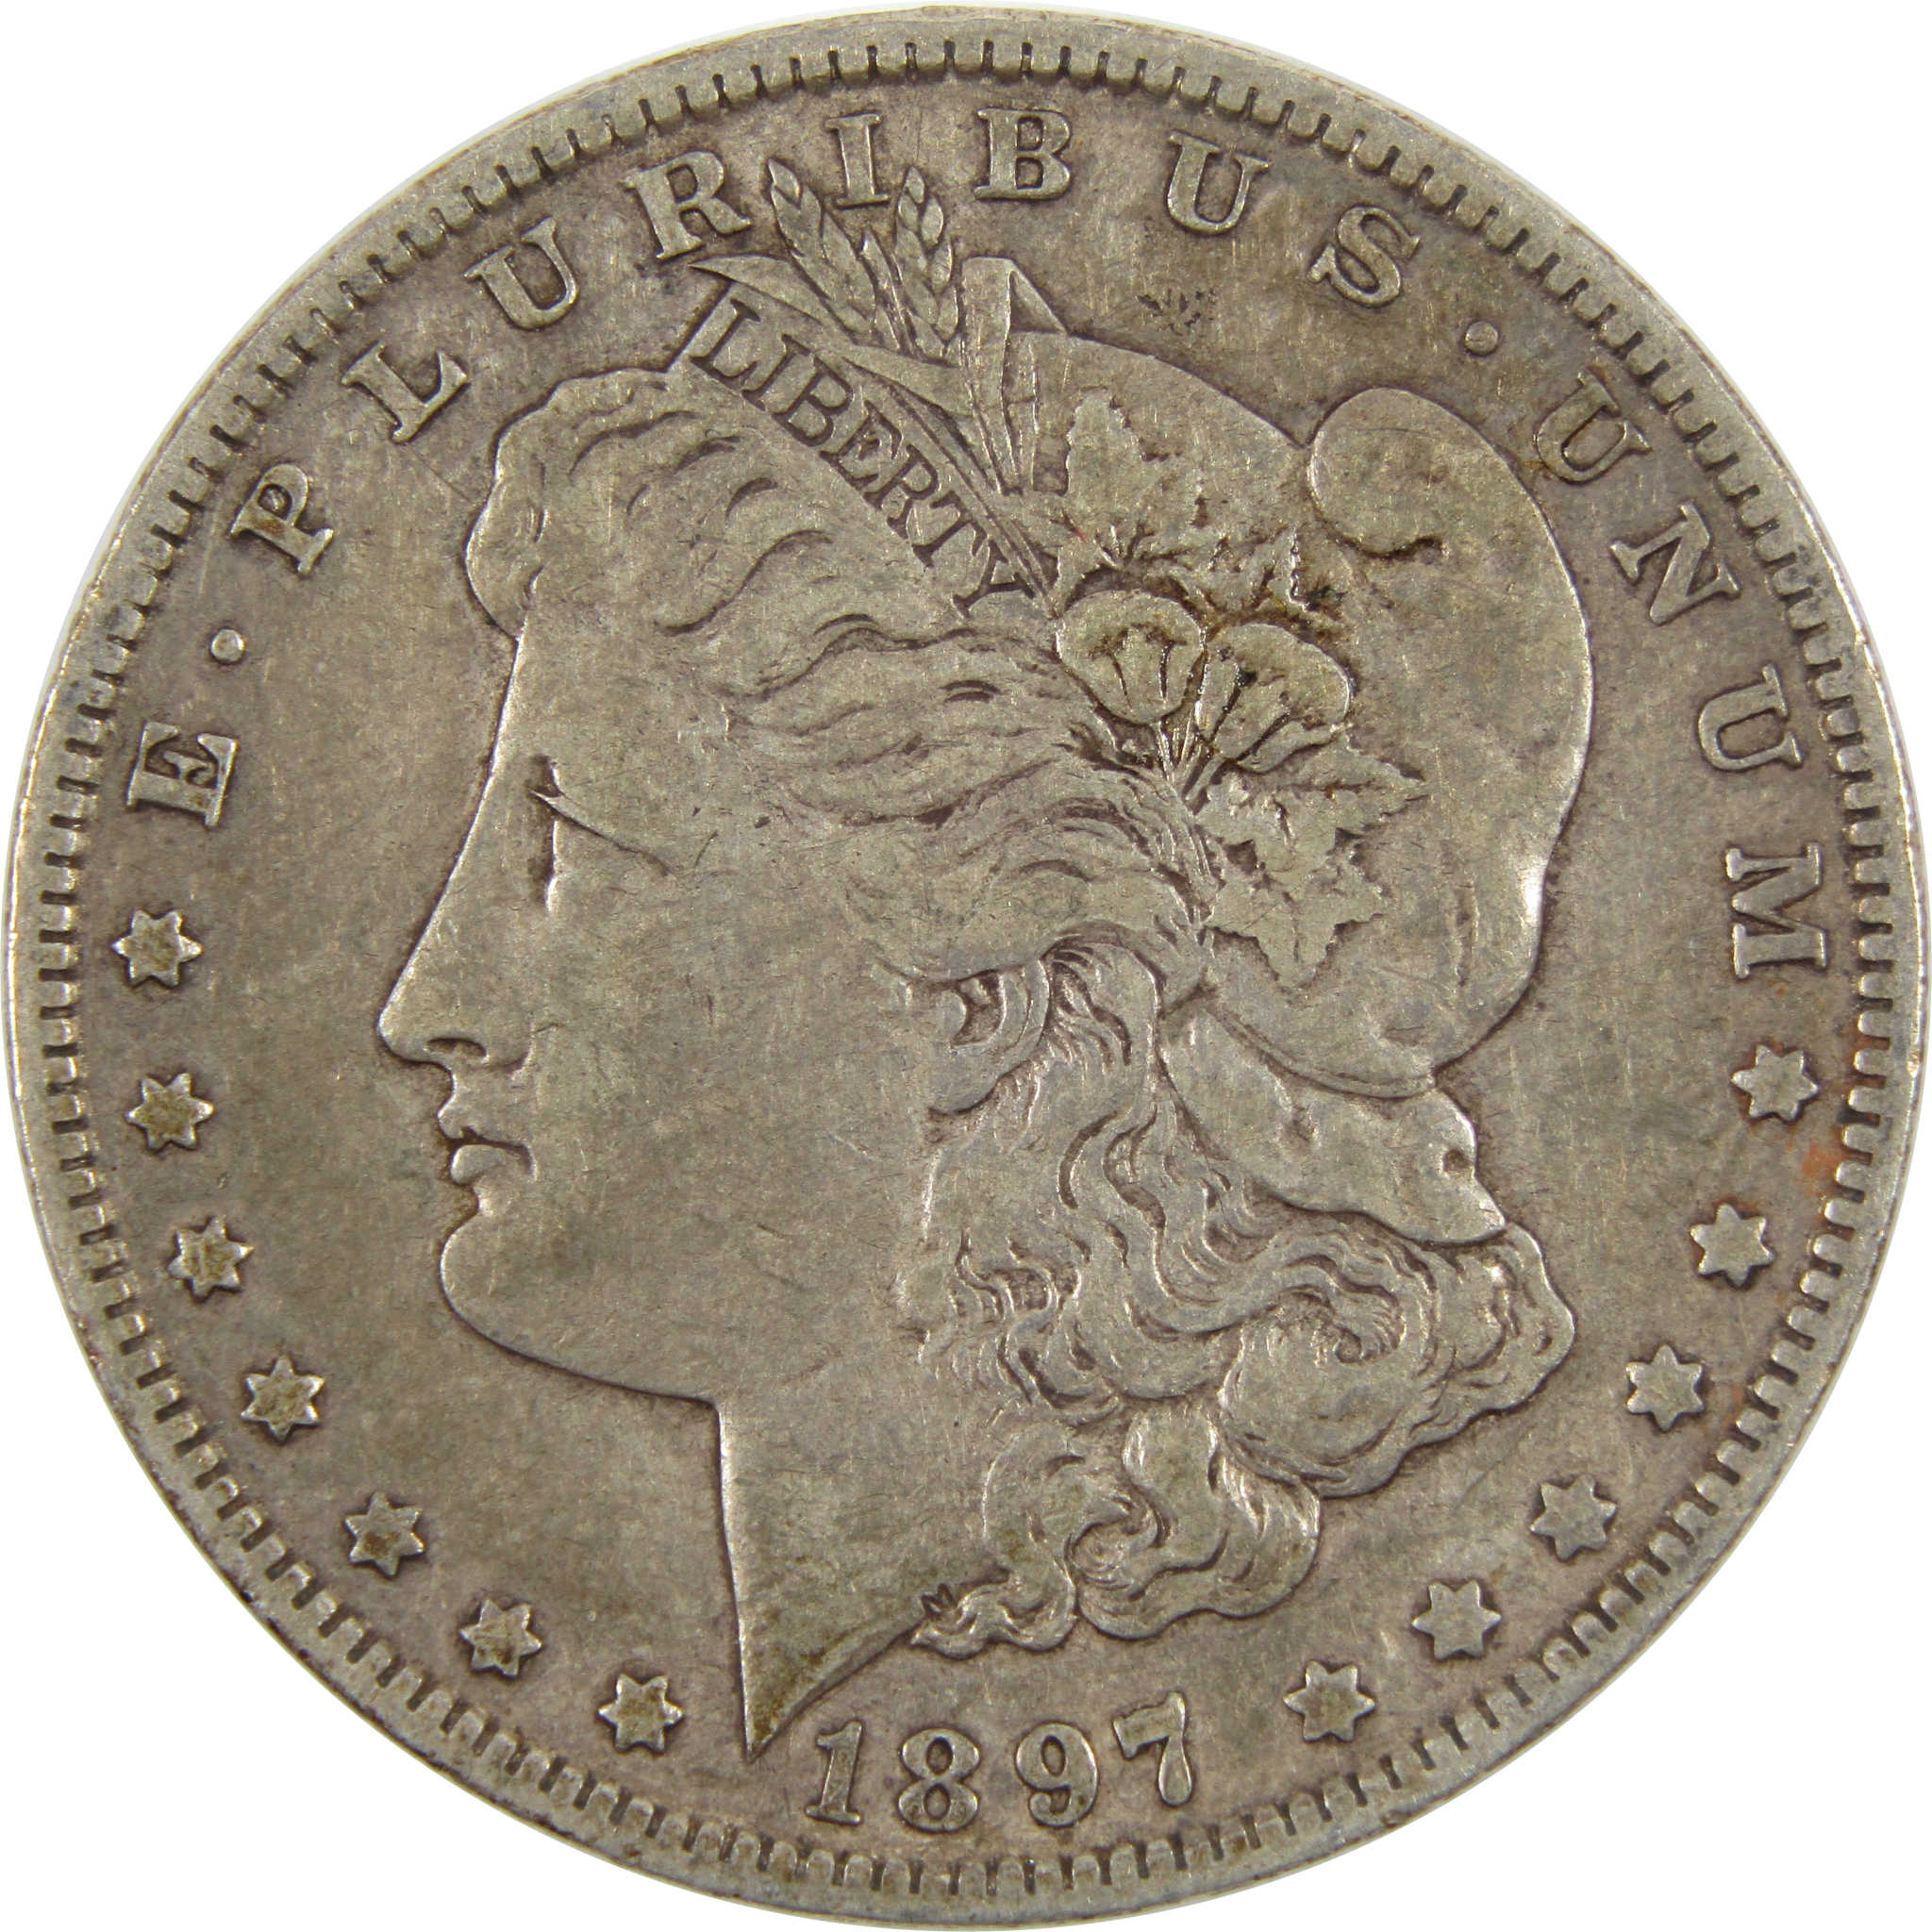 1897 O Morgan Dollar VF Very Fine 90% Silver $1 Coin SKU:I7564 - Morgan coin - Morgan silver dollar - Morgan silver dollar for sale - Profile Coins &amp; Collectibles